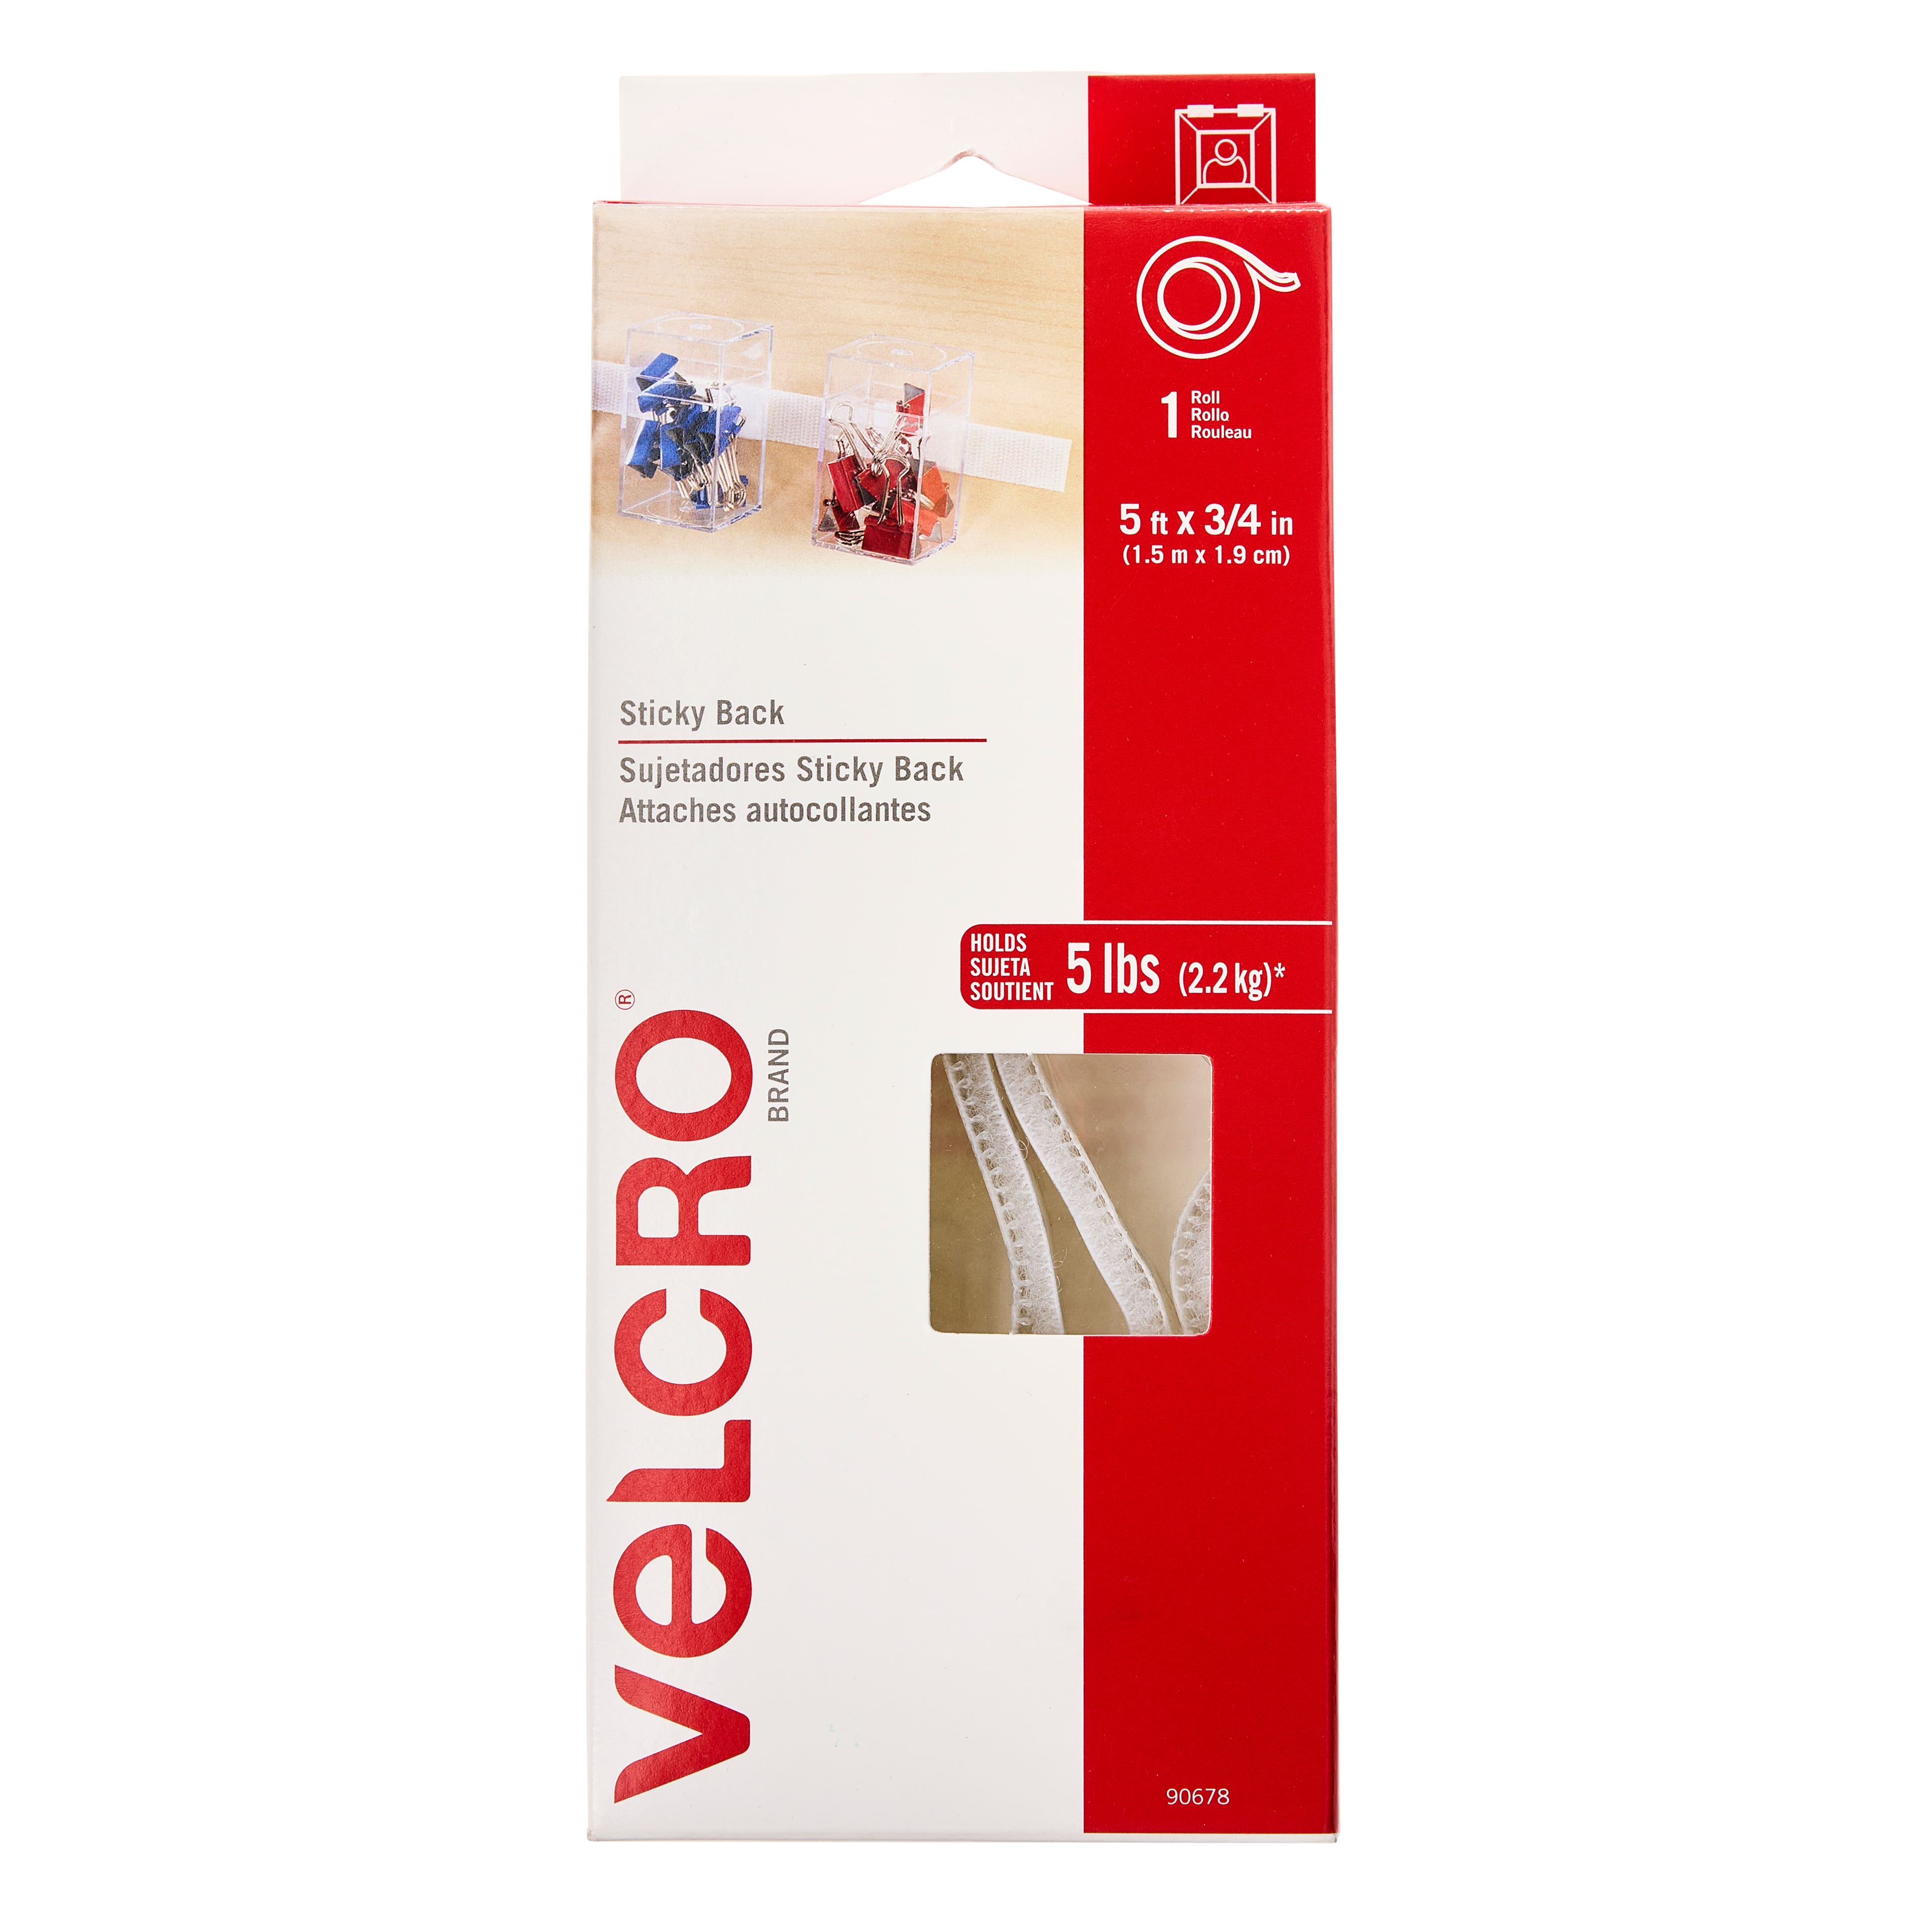 Genuine VELCRO® Brand Self-Adhesive Hook & Loop Double Sided Tape